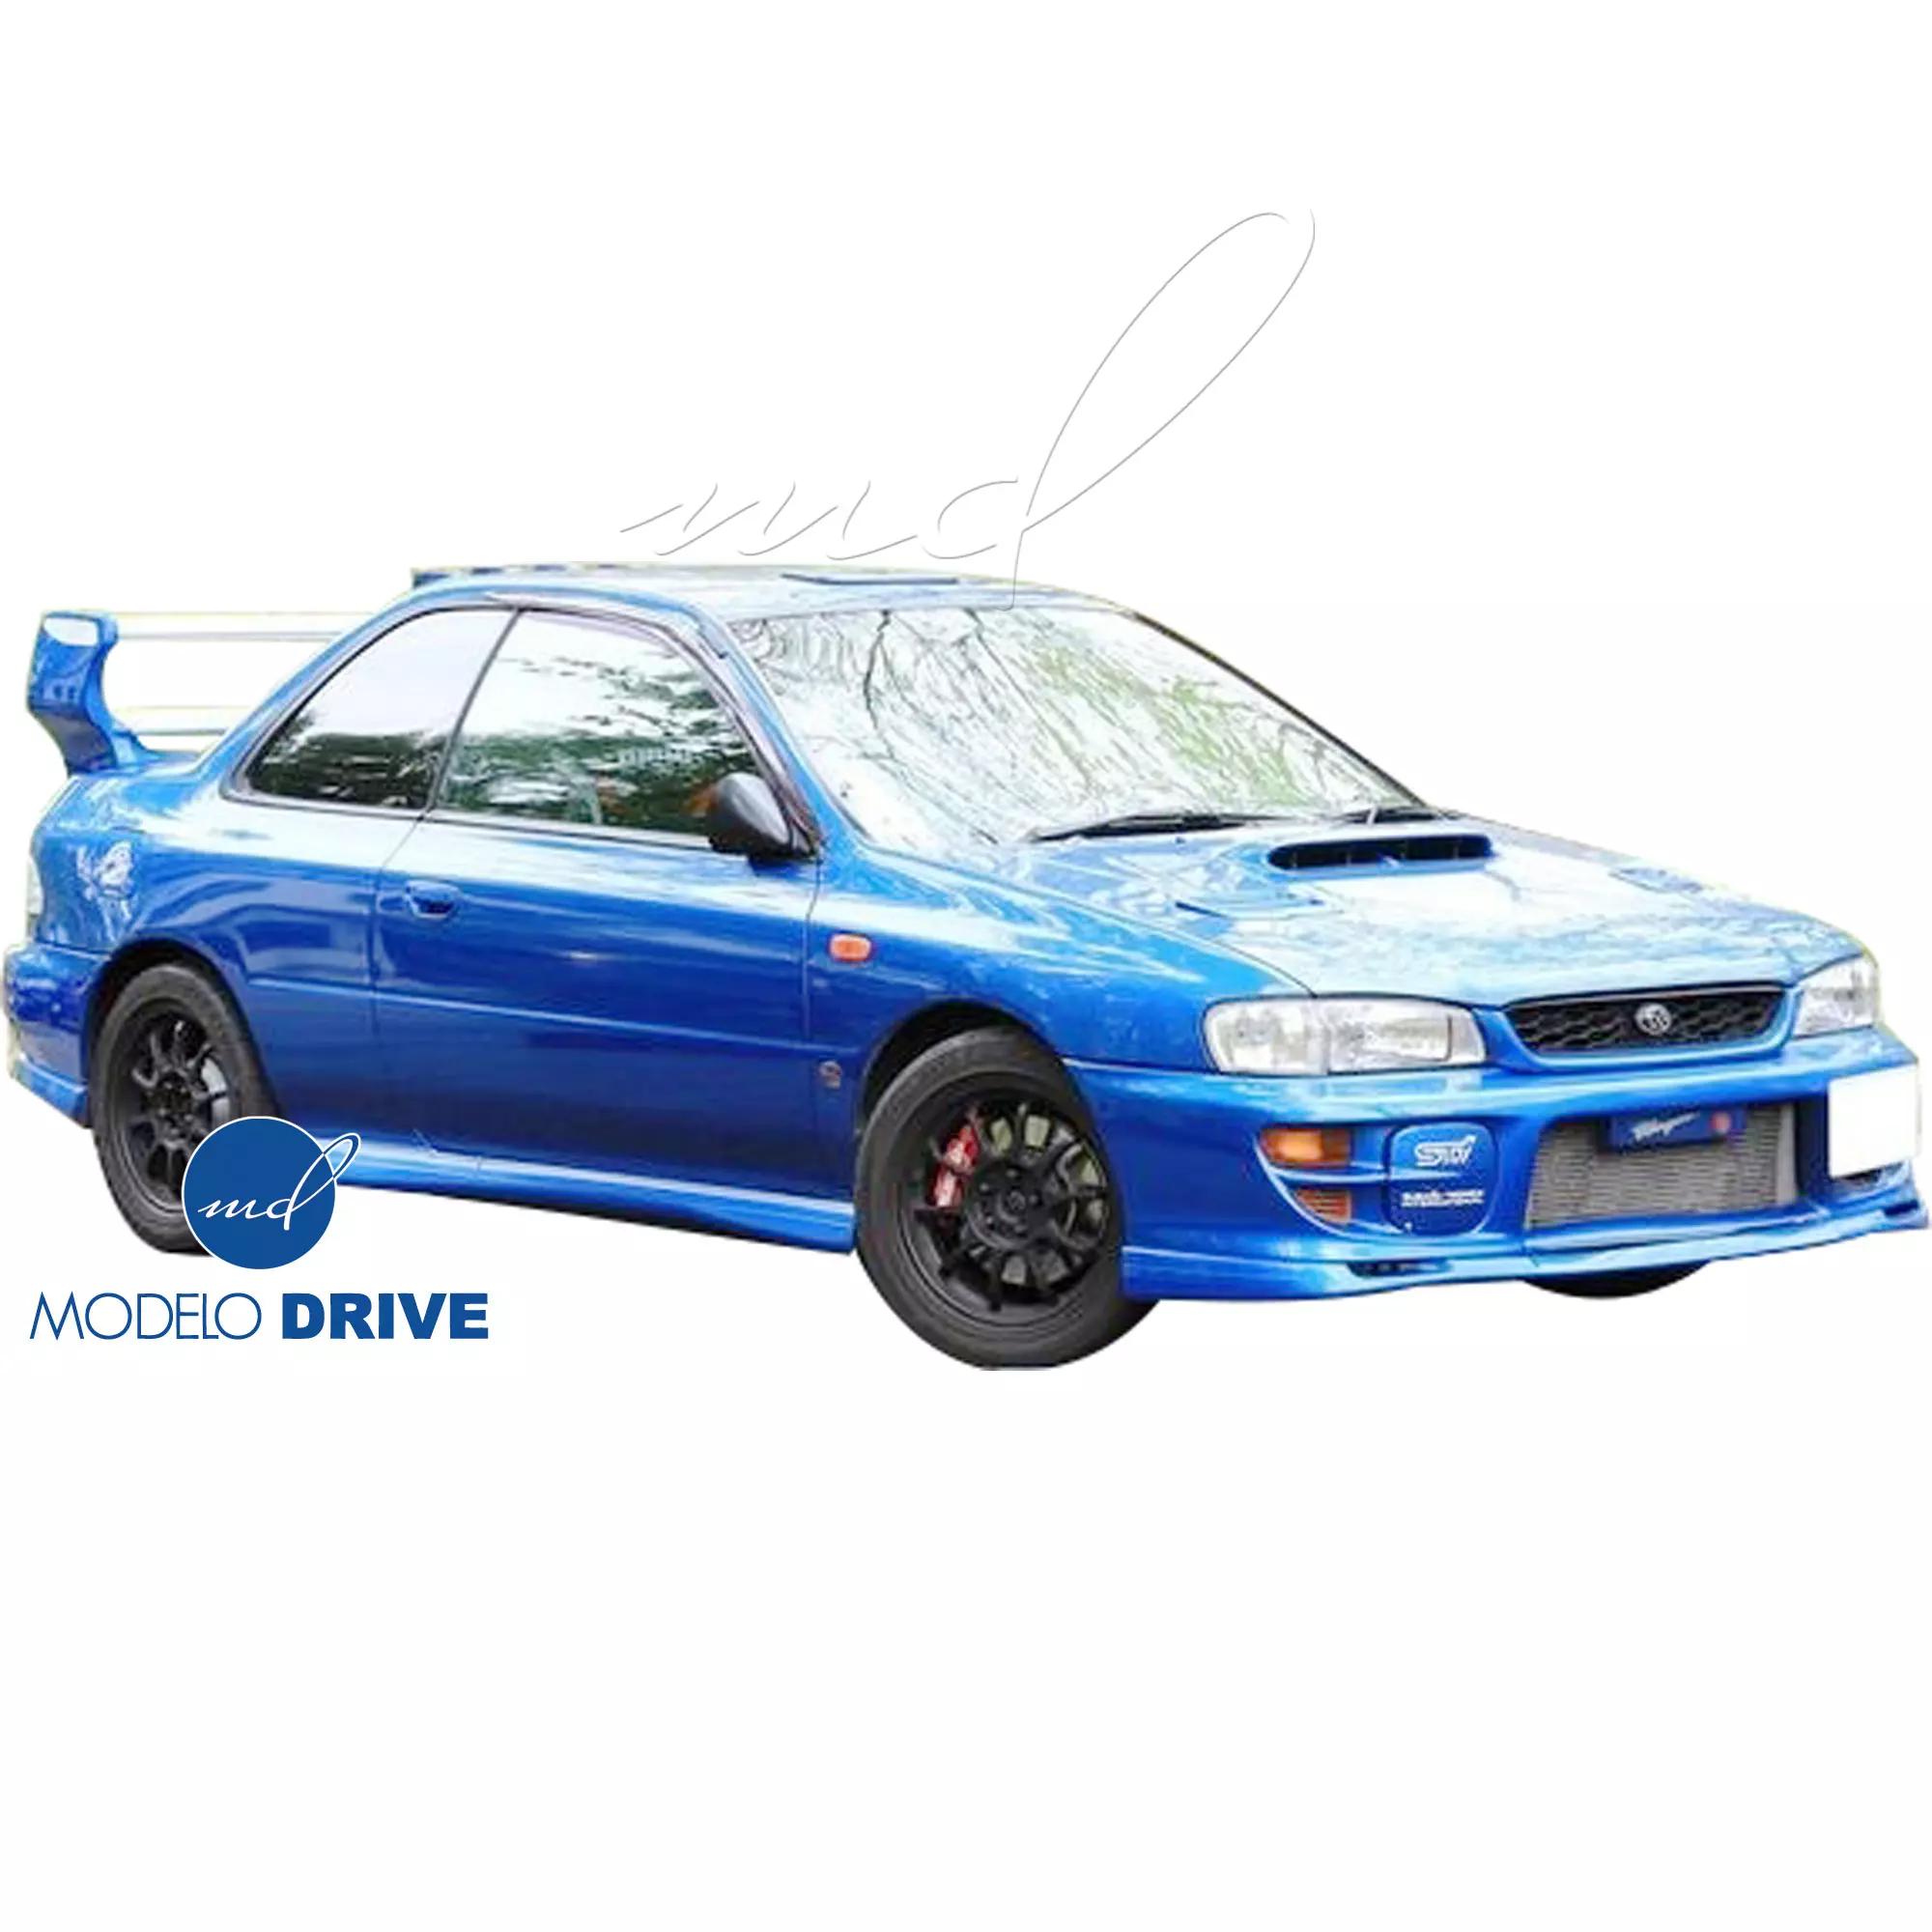 ModeloDrive FRP S201 Look Spoiler Wing > Subaru Impreza (GC8) 1993-2001 > 2/4dr - Image 34